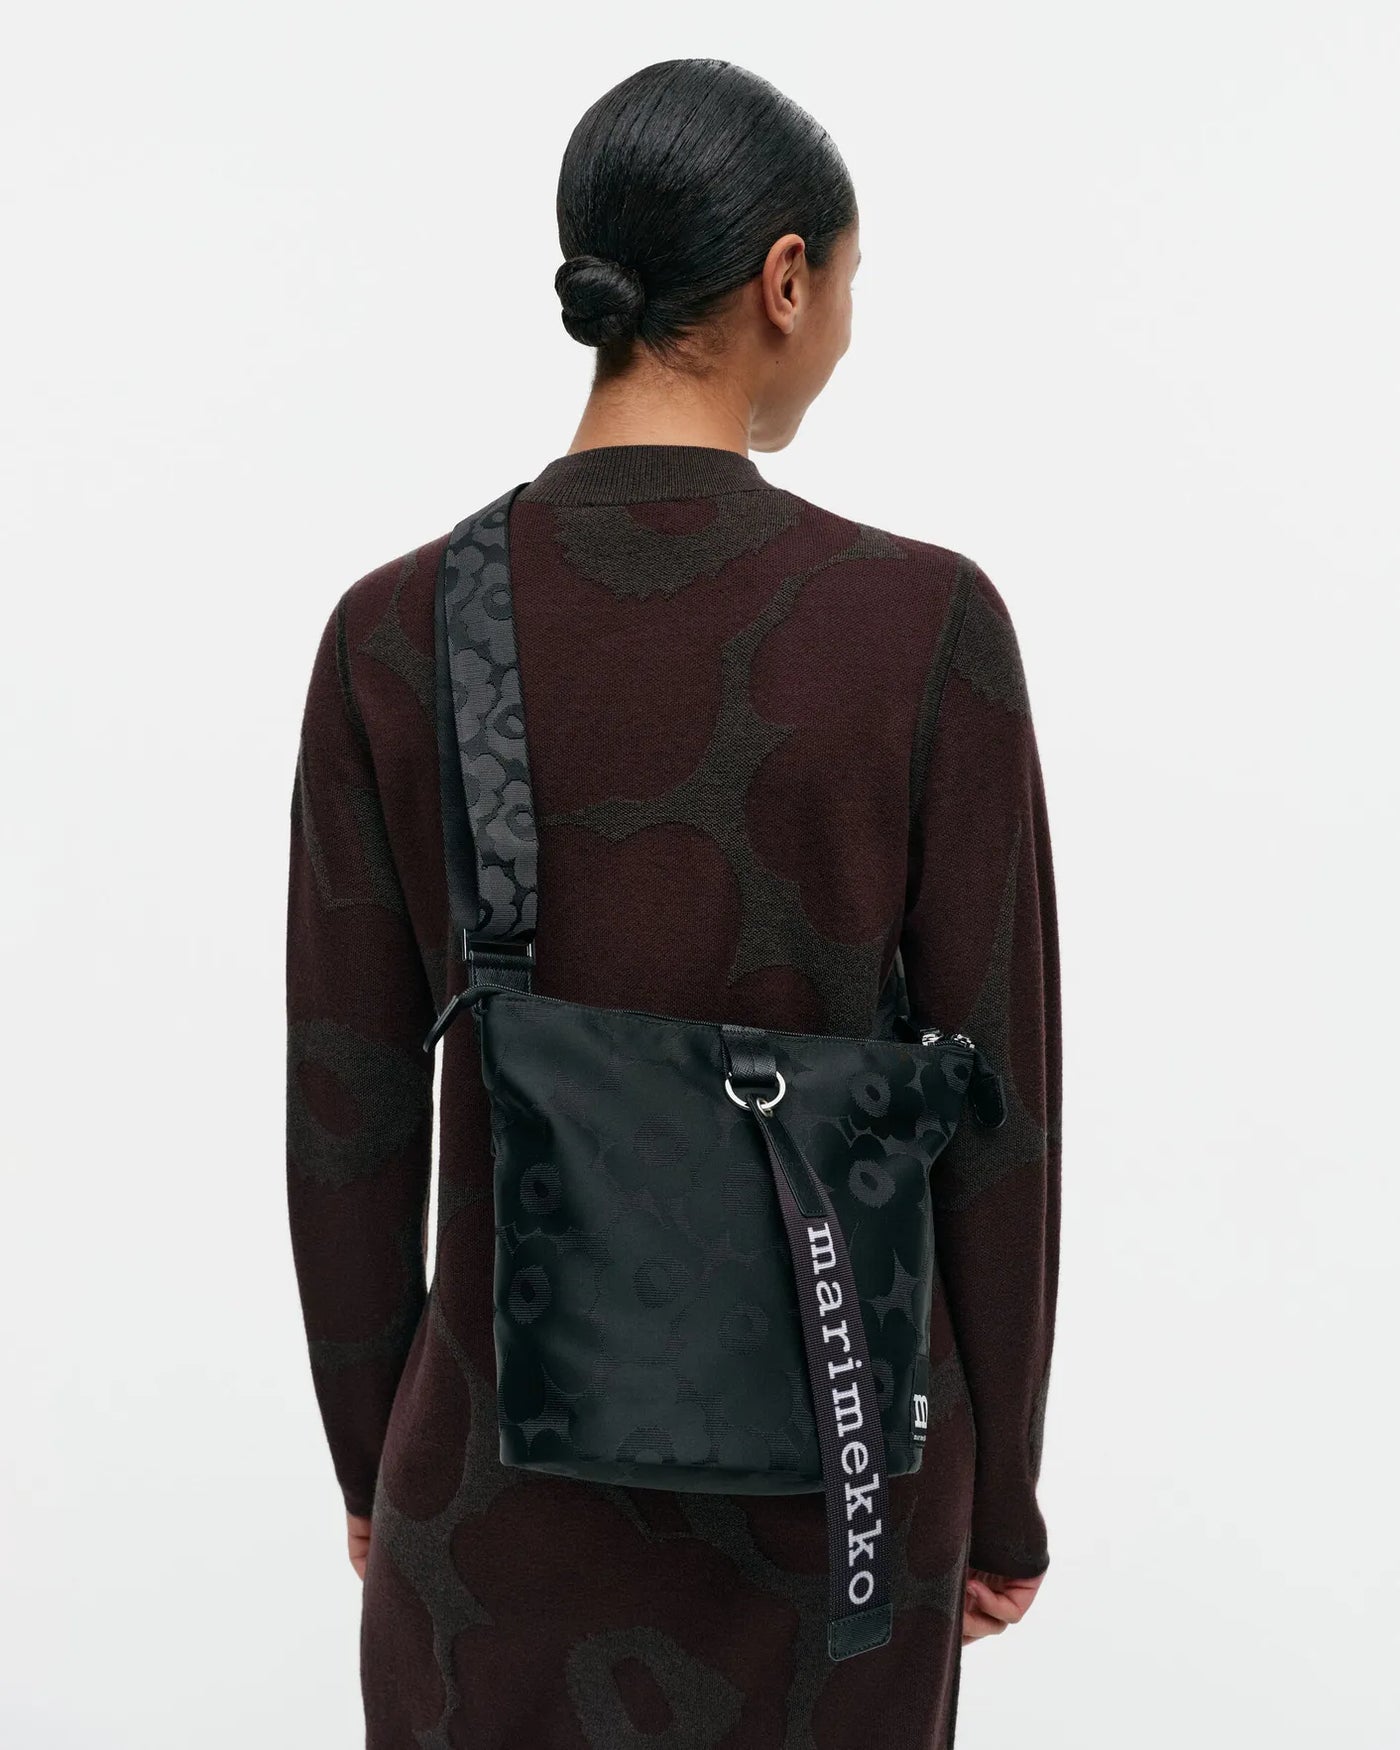 Carry All  Shoulder Bag,  Black Unikko